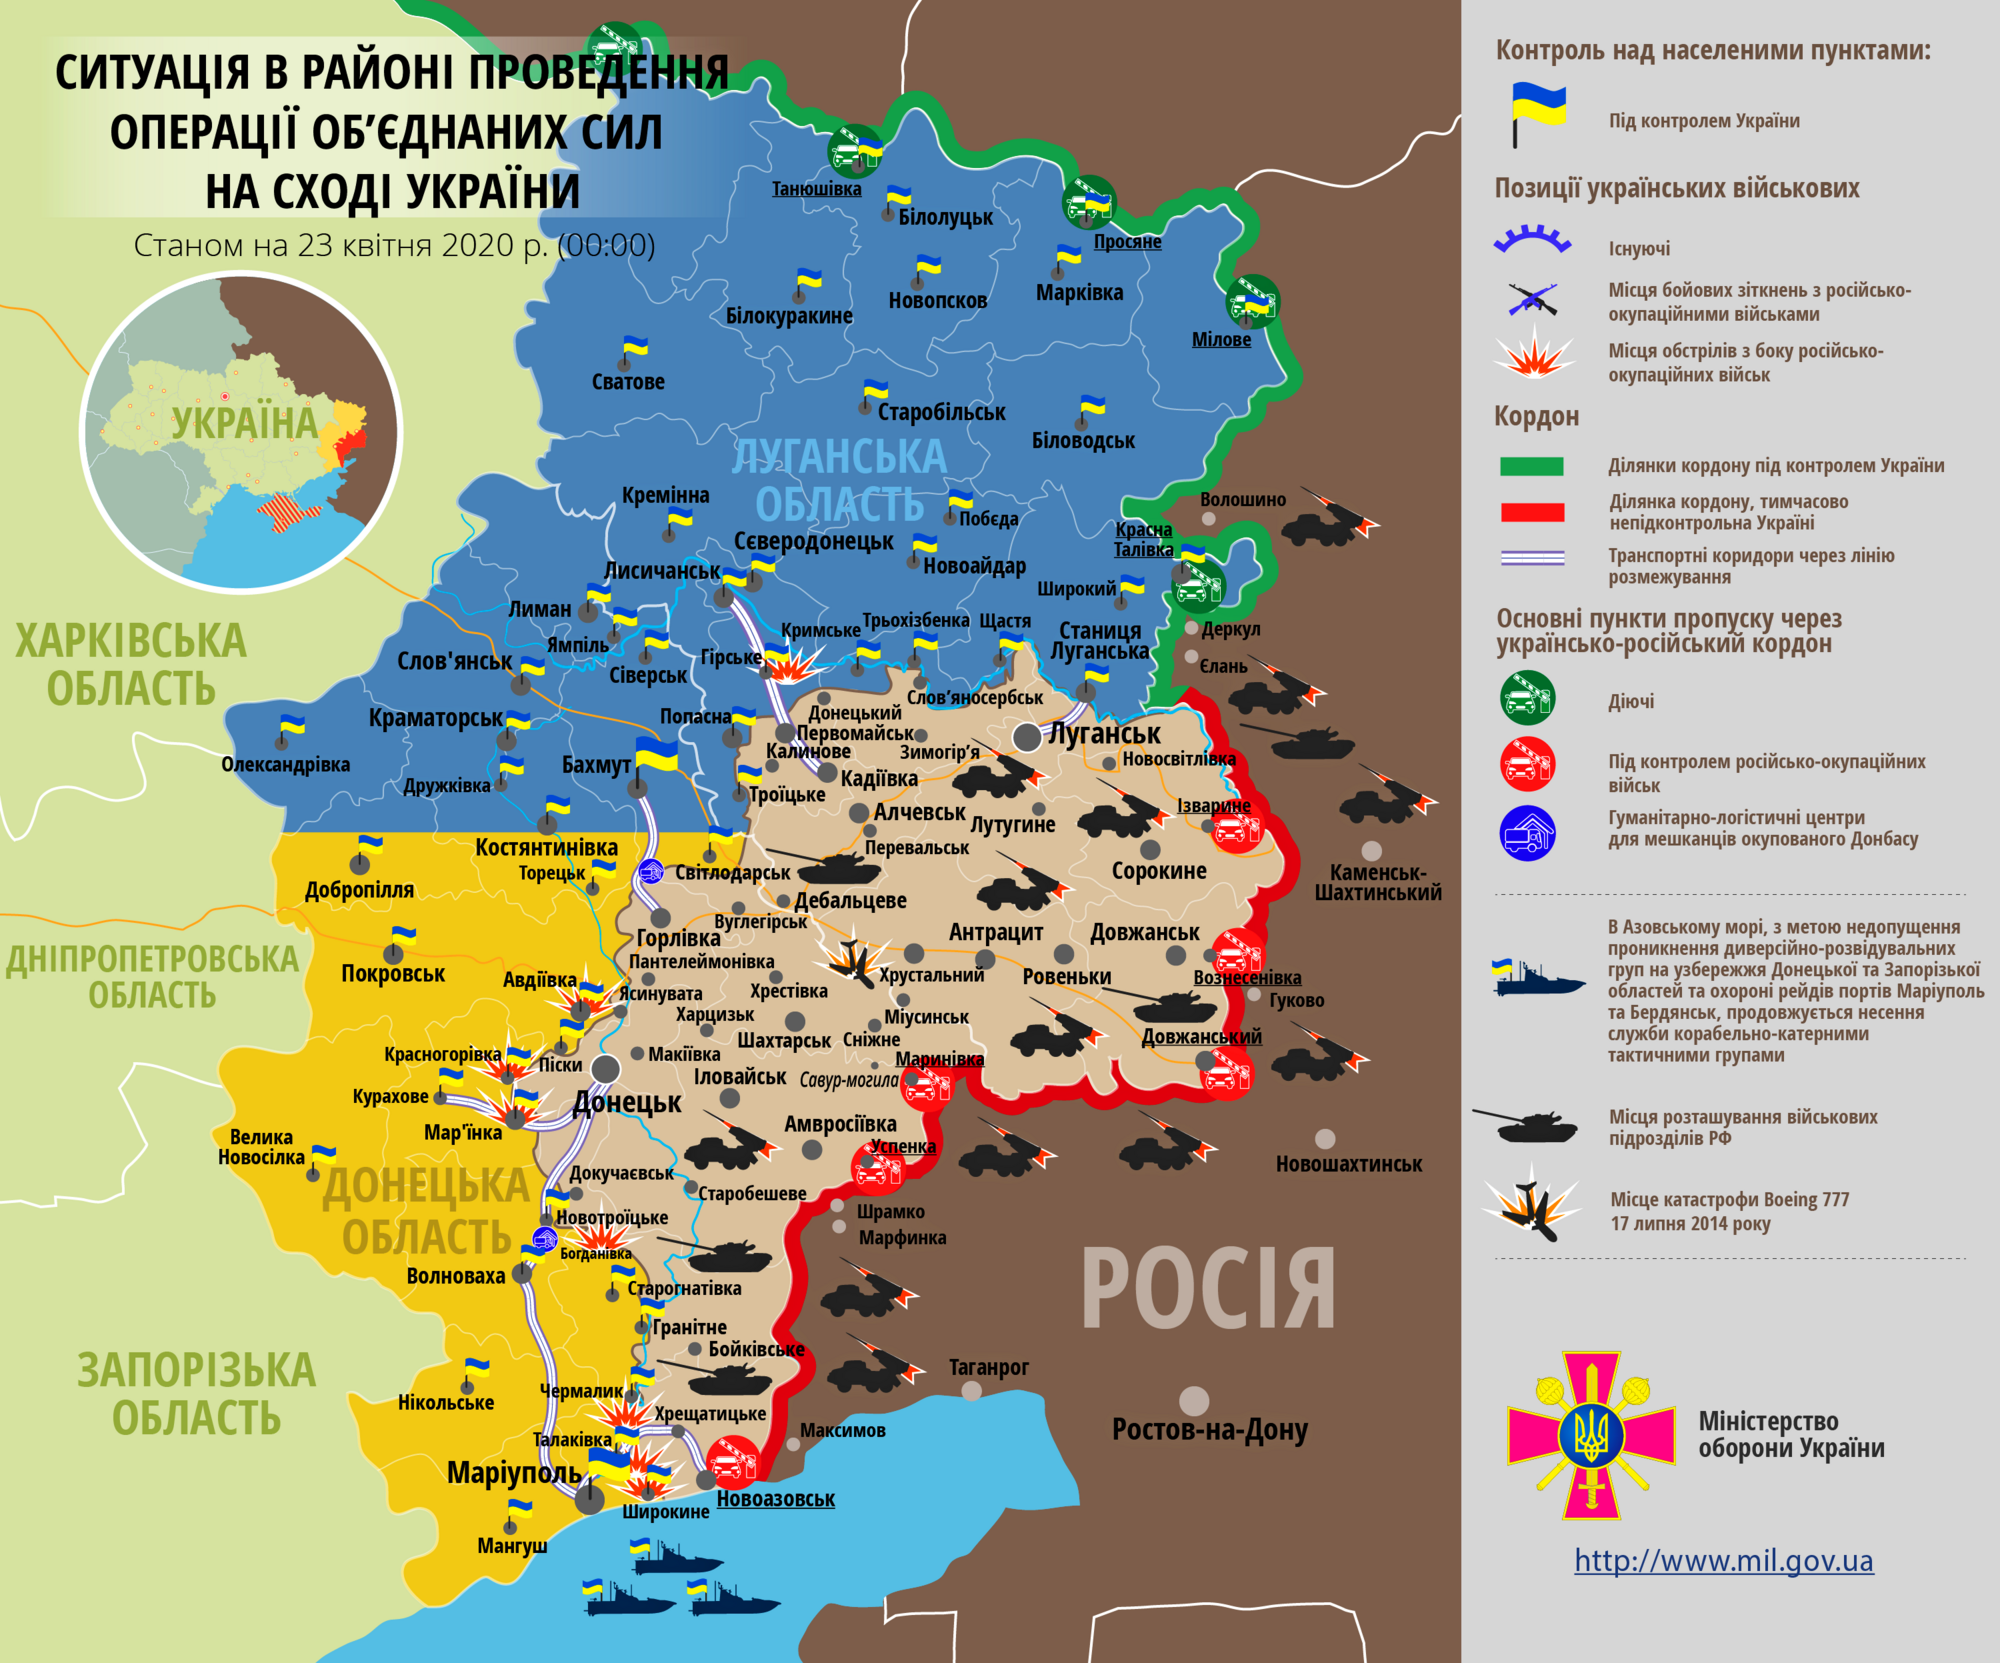 Ситуация в зоне ООС на Донбассе 23 апреля